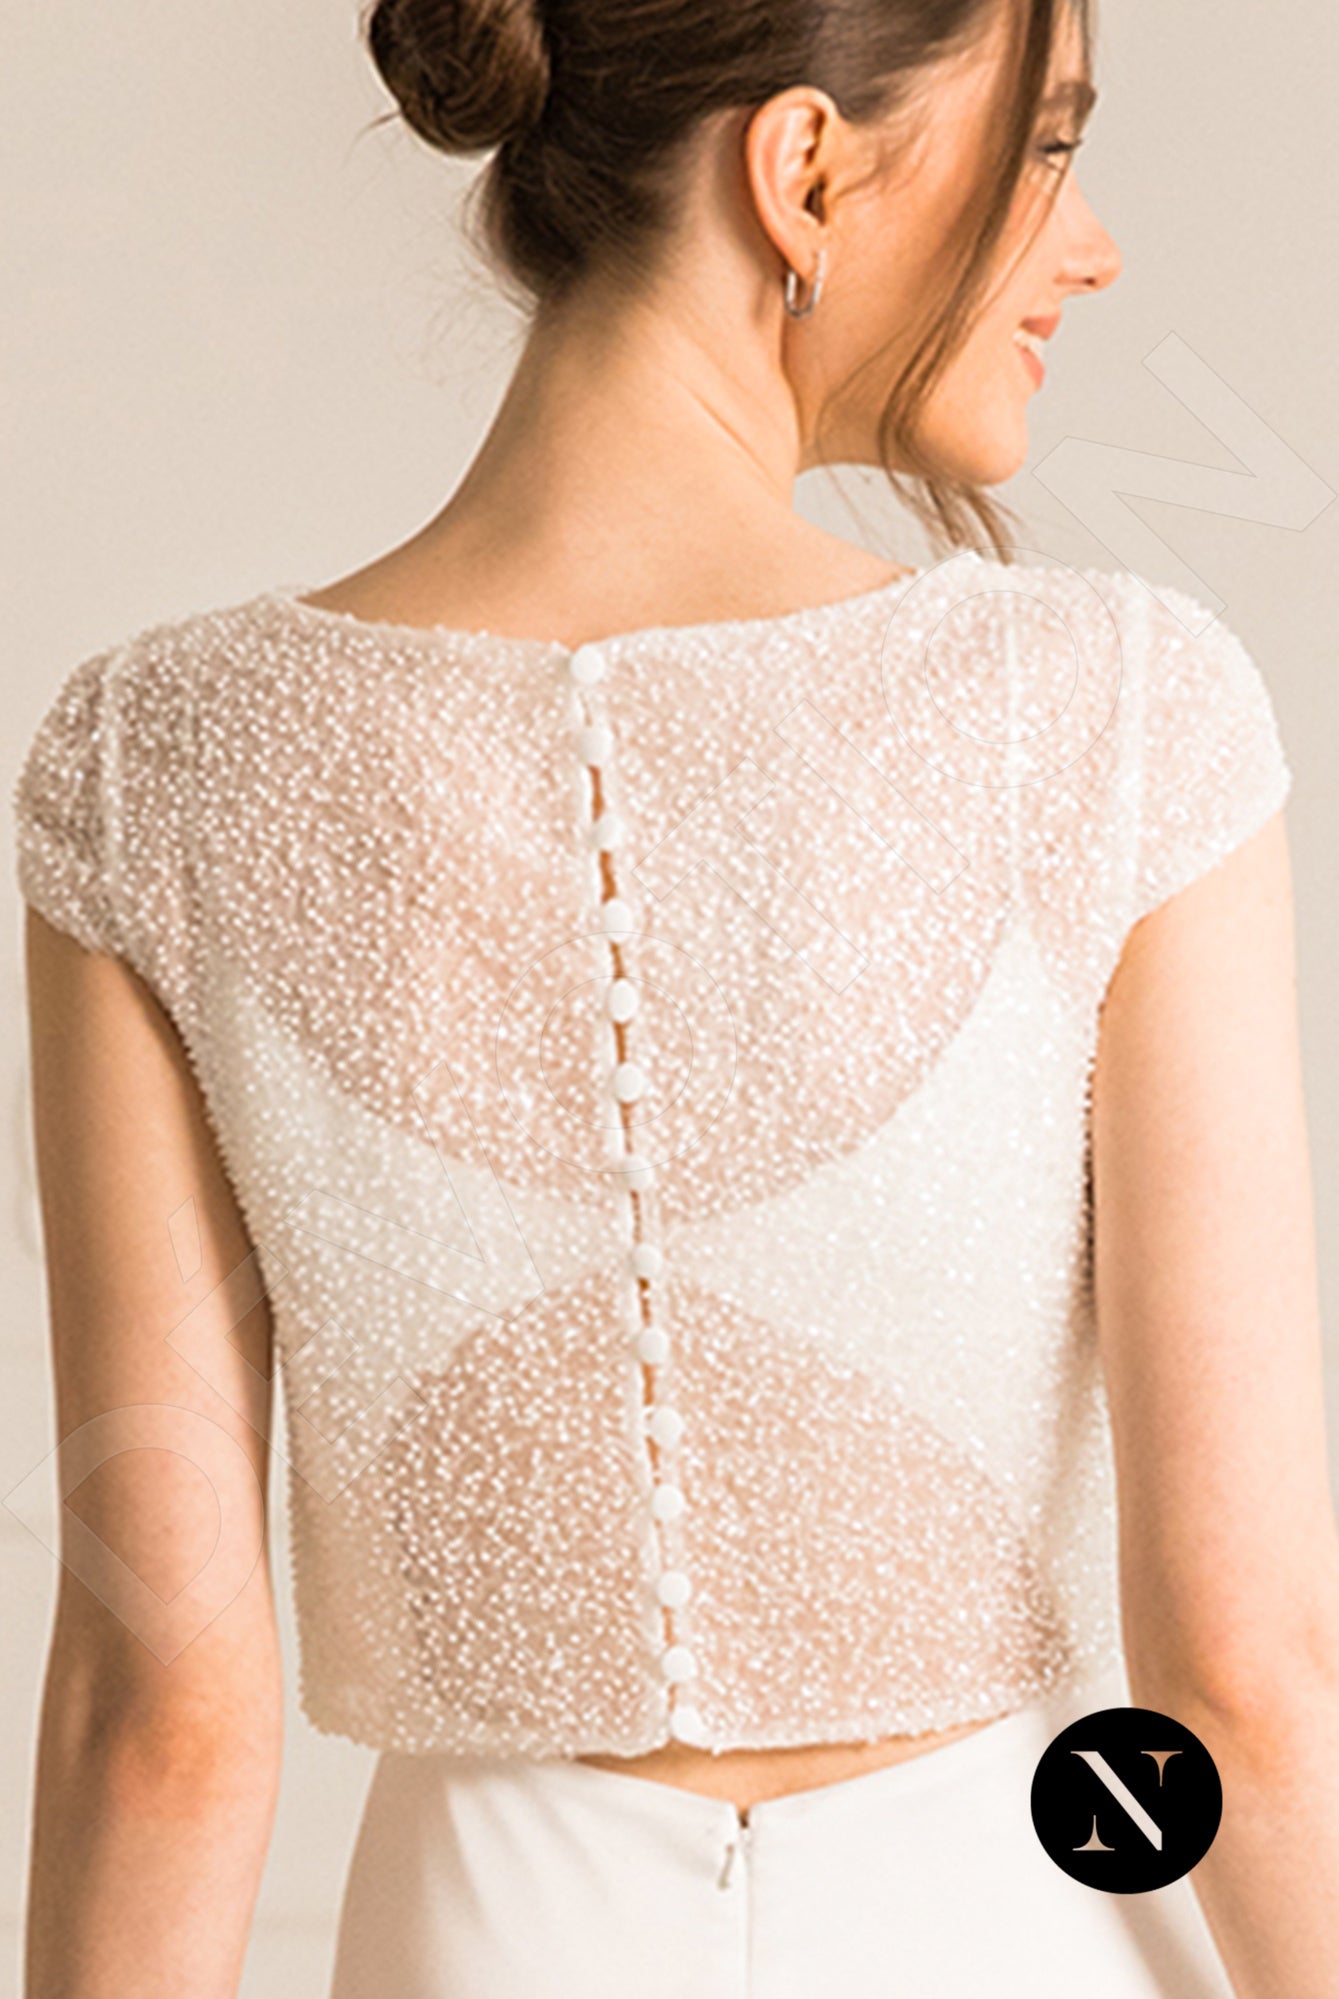 Gabanna Crystal Full back A-line Long sleeve Wedding Dress 7